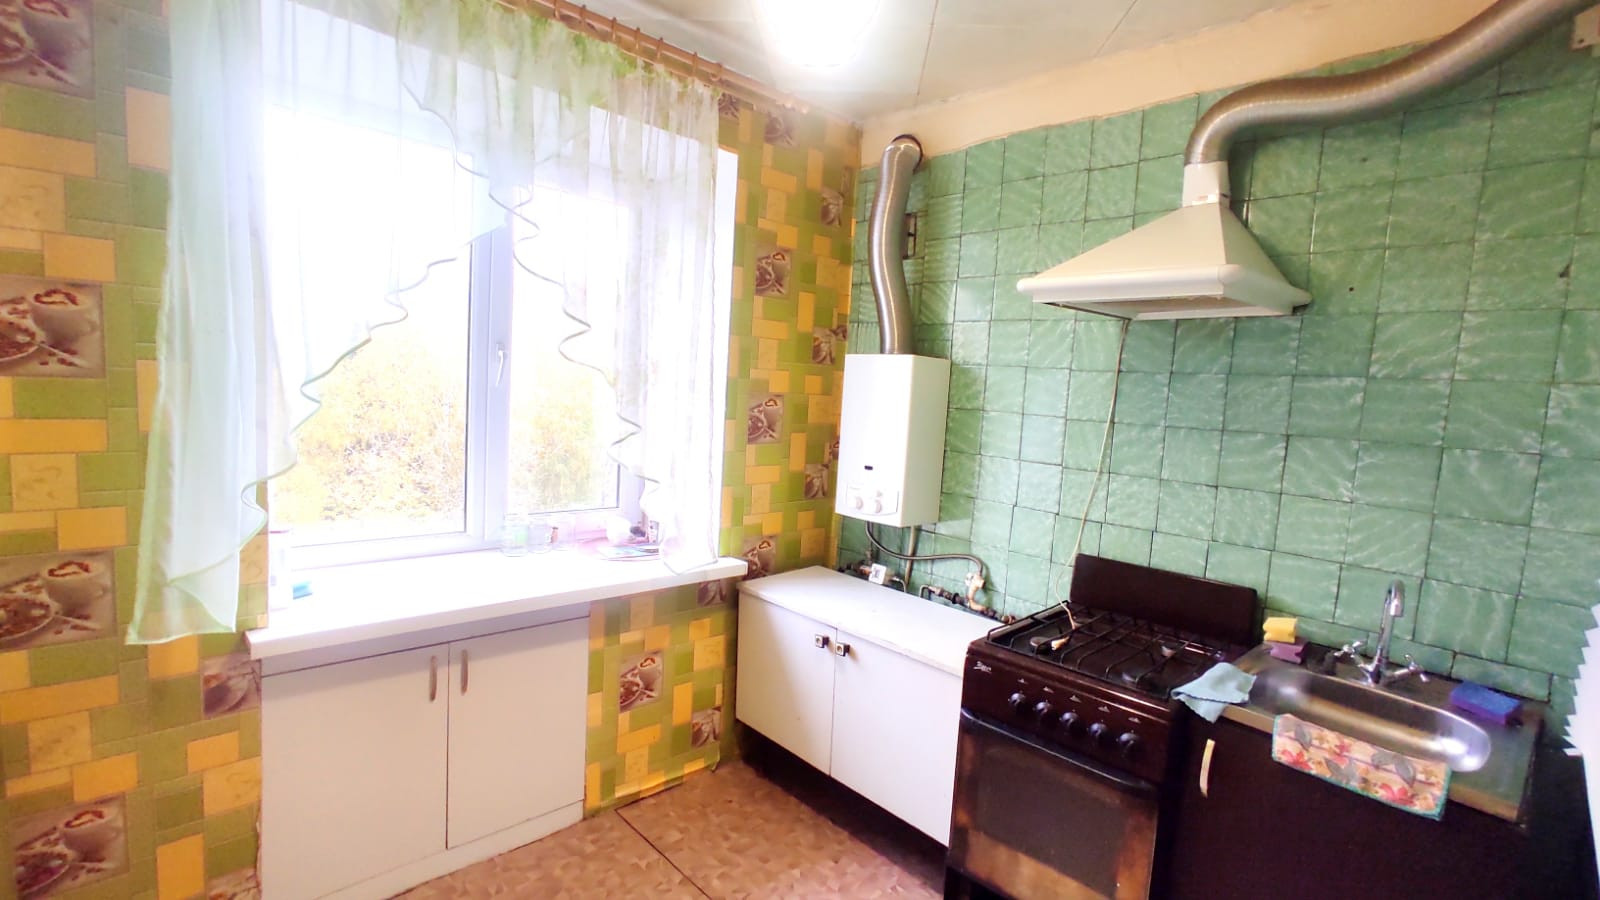 Купить квартиру в белорецке комнатную. Купить квартиру в Белорецке. Купить 1 комнатную квартиру в Белорецке свежие объявления.